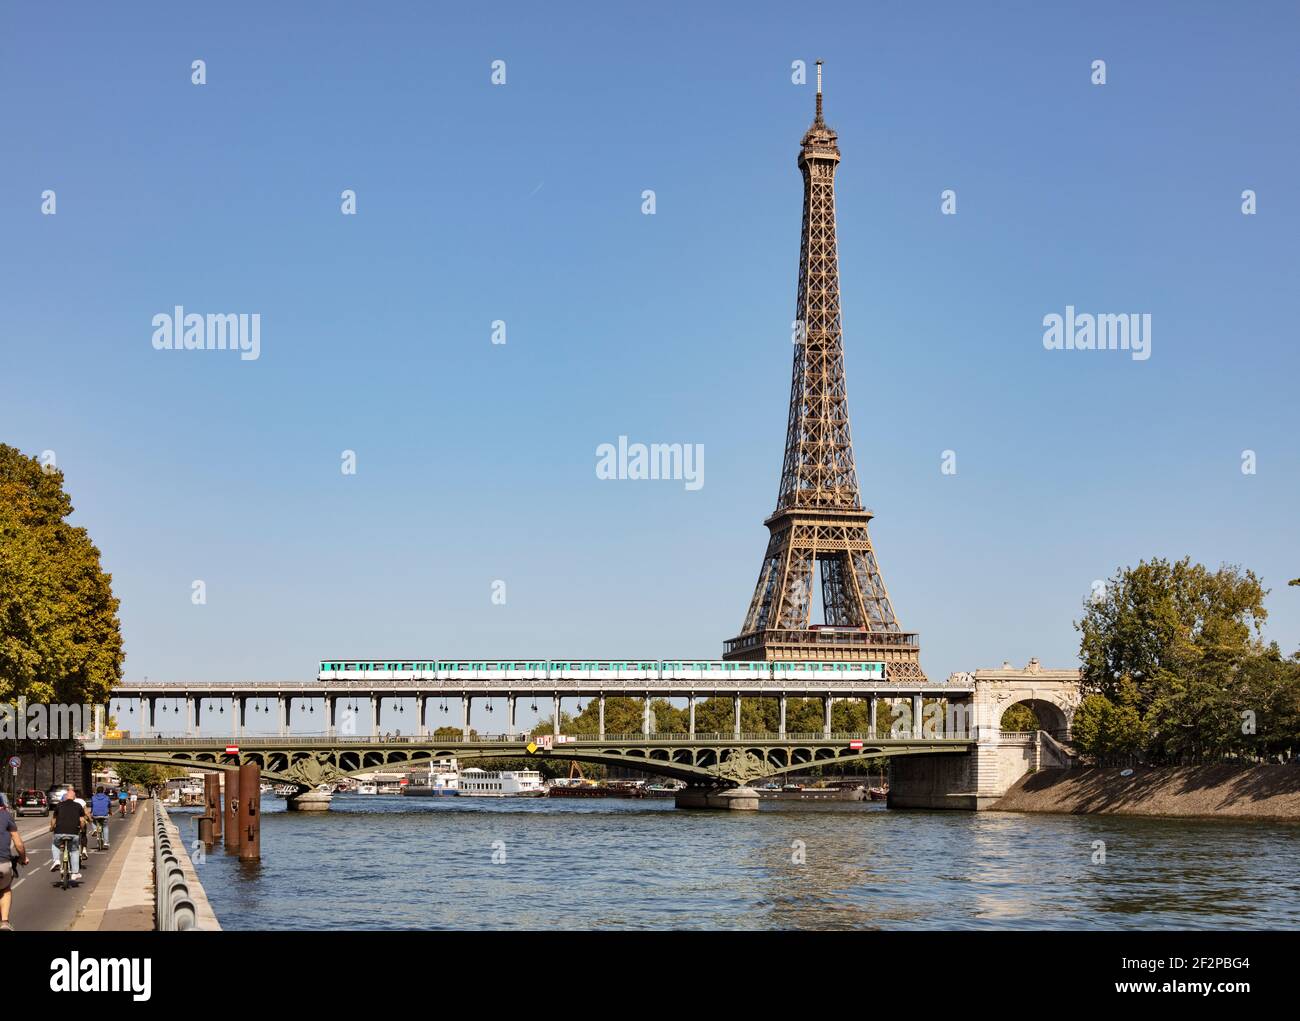 Frankreich, Paris, Eiffelturm, U-Bahn fährt über eine Brücke und überquert die seine, Triebwagen fahren auf Gummireifen Stockfoto